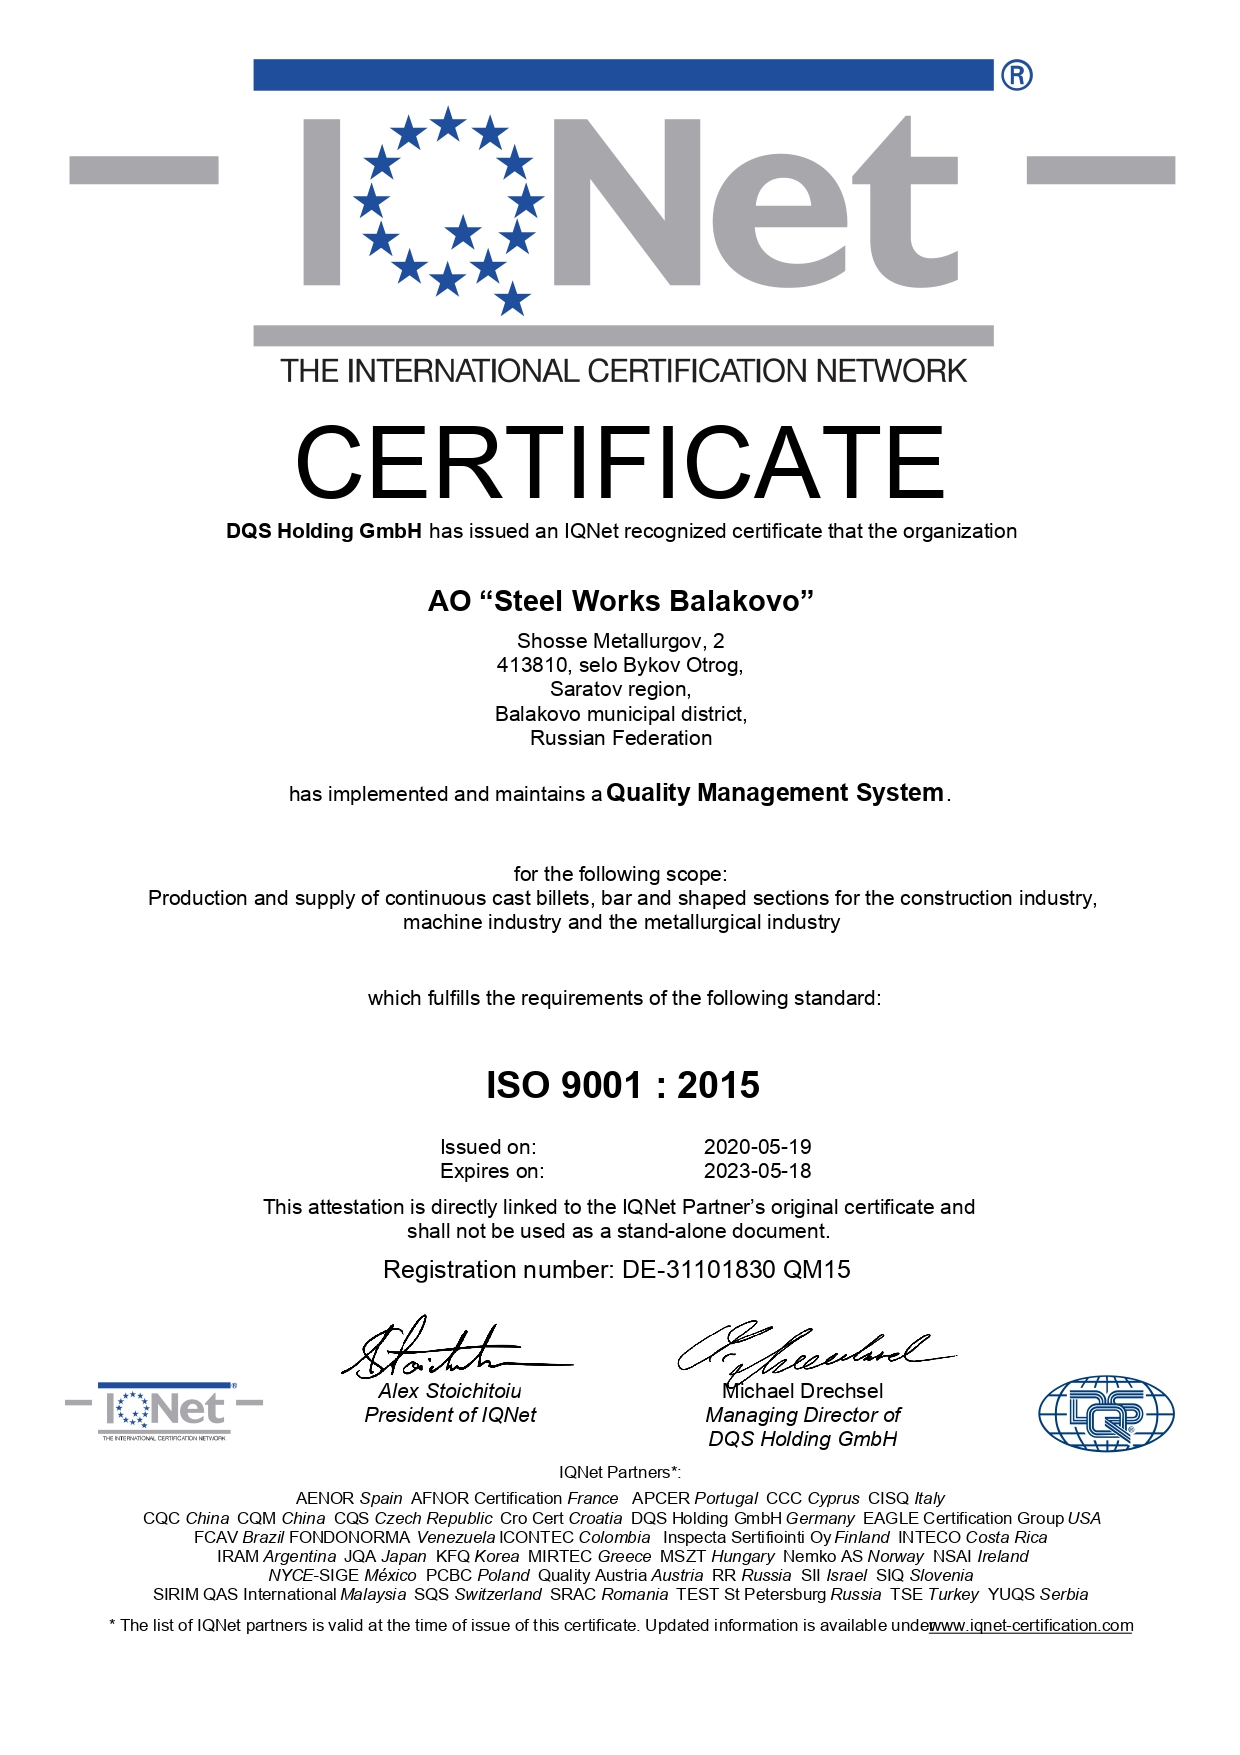 Сертификат, удостоверяющий, что Система Менеджмента Качества АО "МЗ Балаково" соответствует требованиям стандарта ISO 9001:2015. Международная сеть сертификации «IQNet» (International Certification Network )